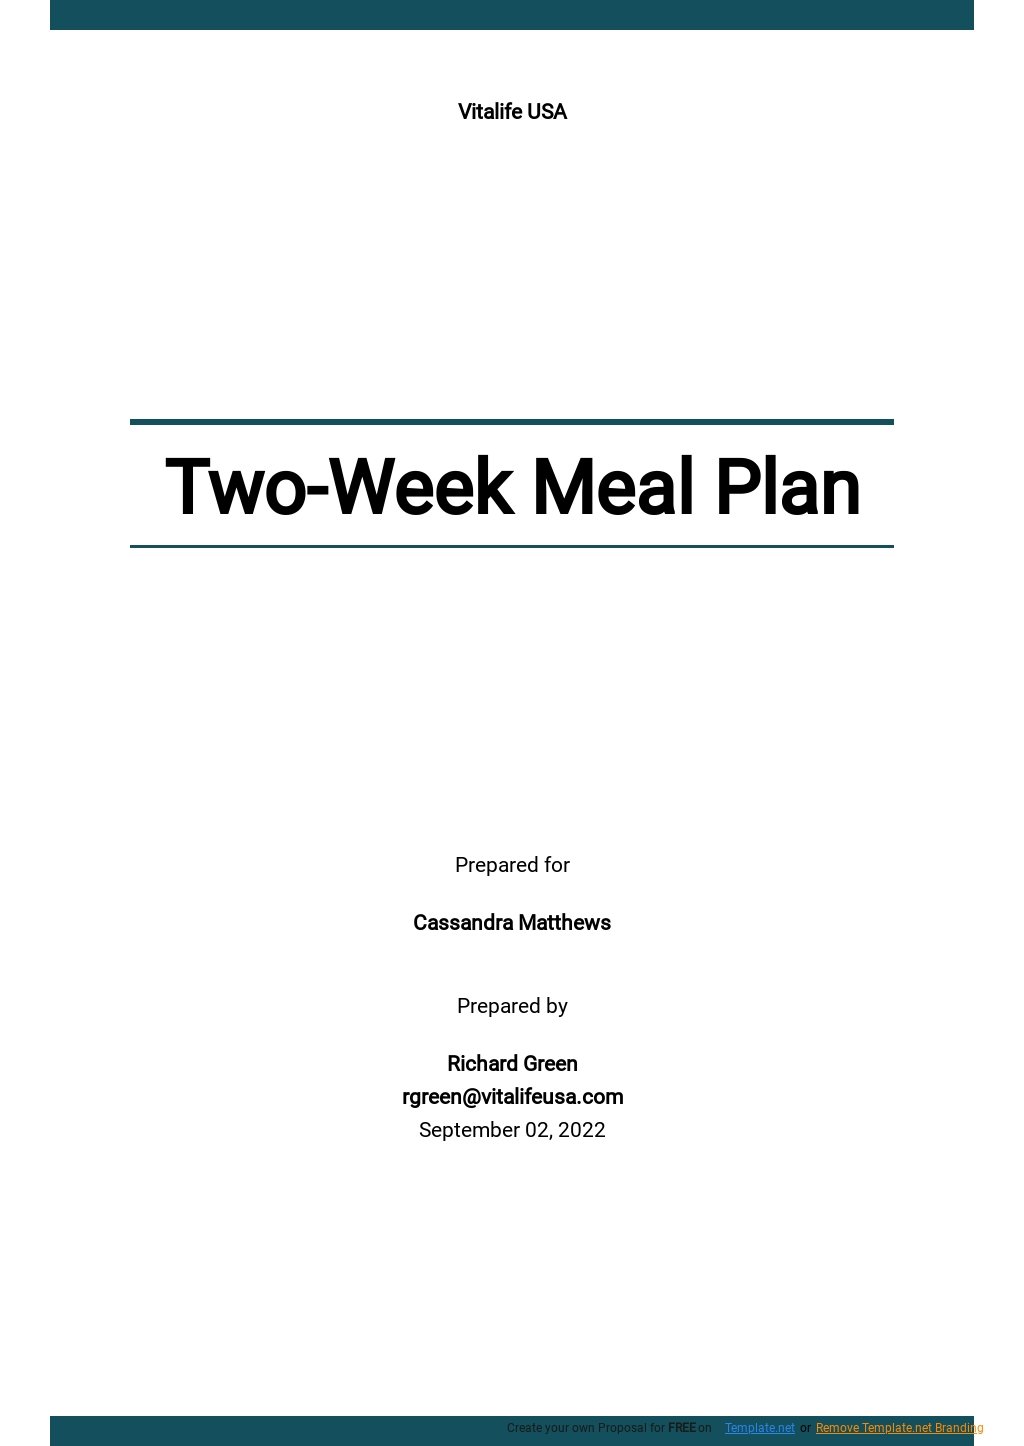 Two Week Meal Plan Template.jpe